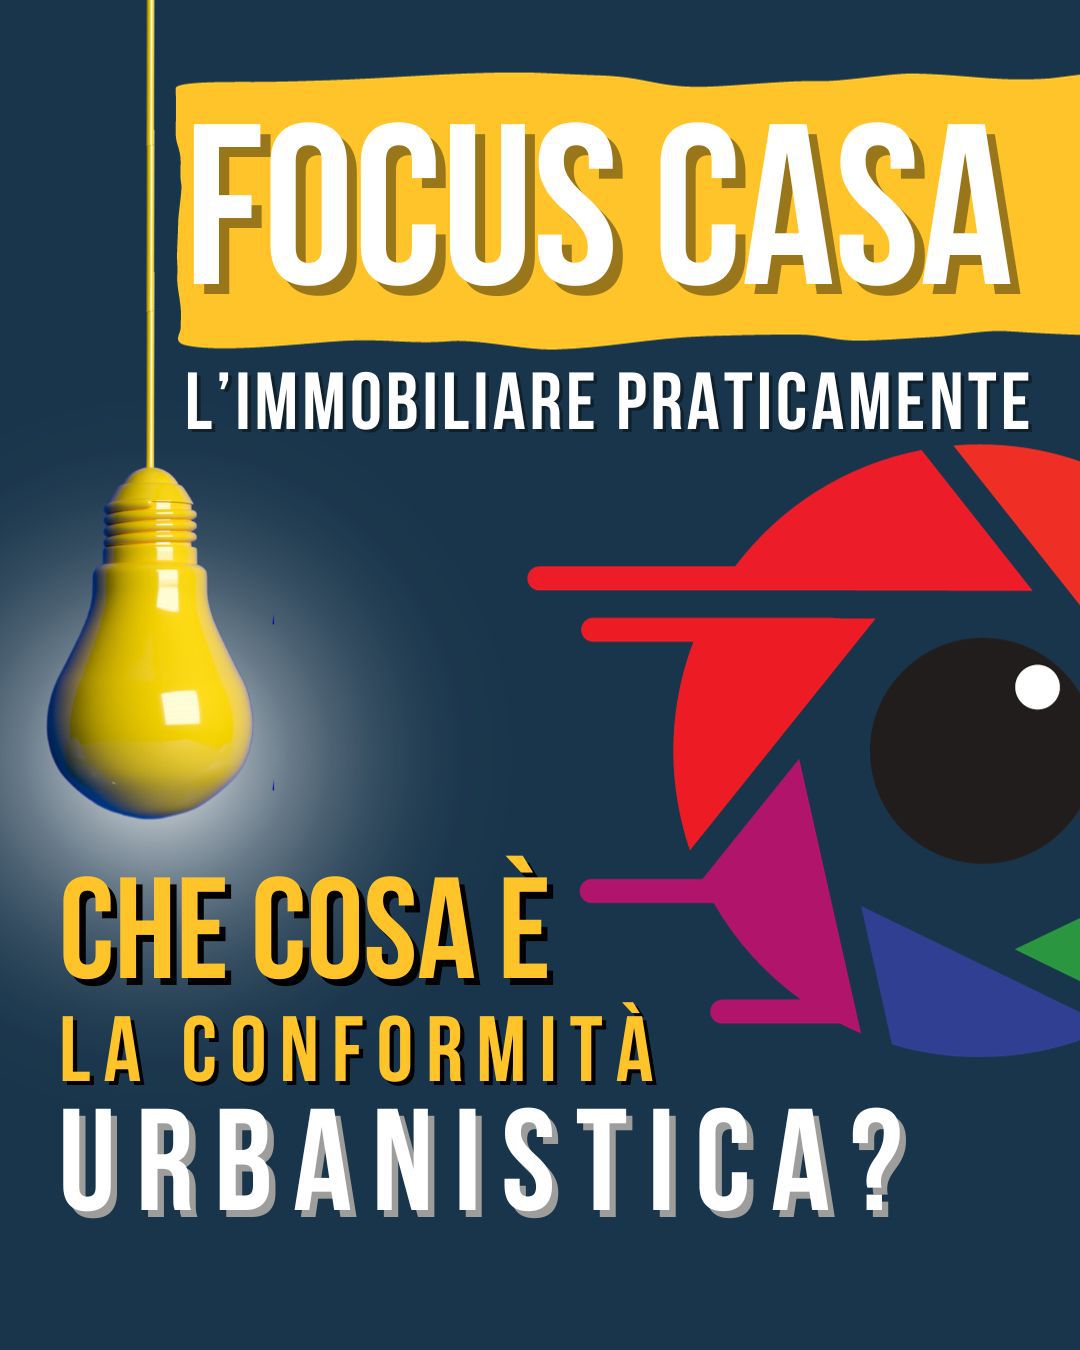 In questo articolo Fabrizio affronta l'argomento della conformità urbanistica.